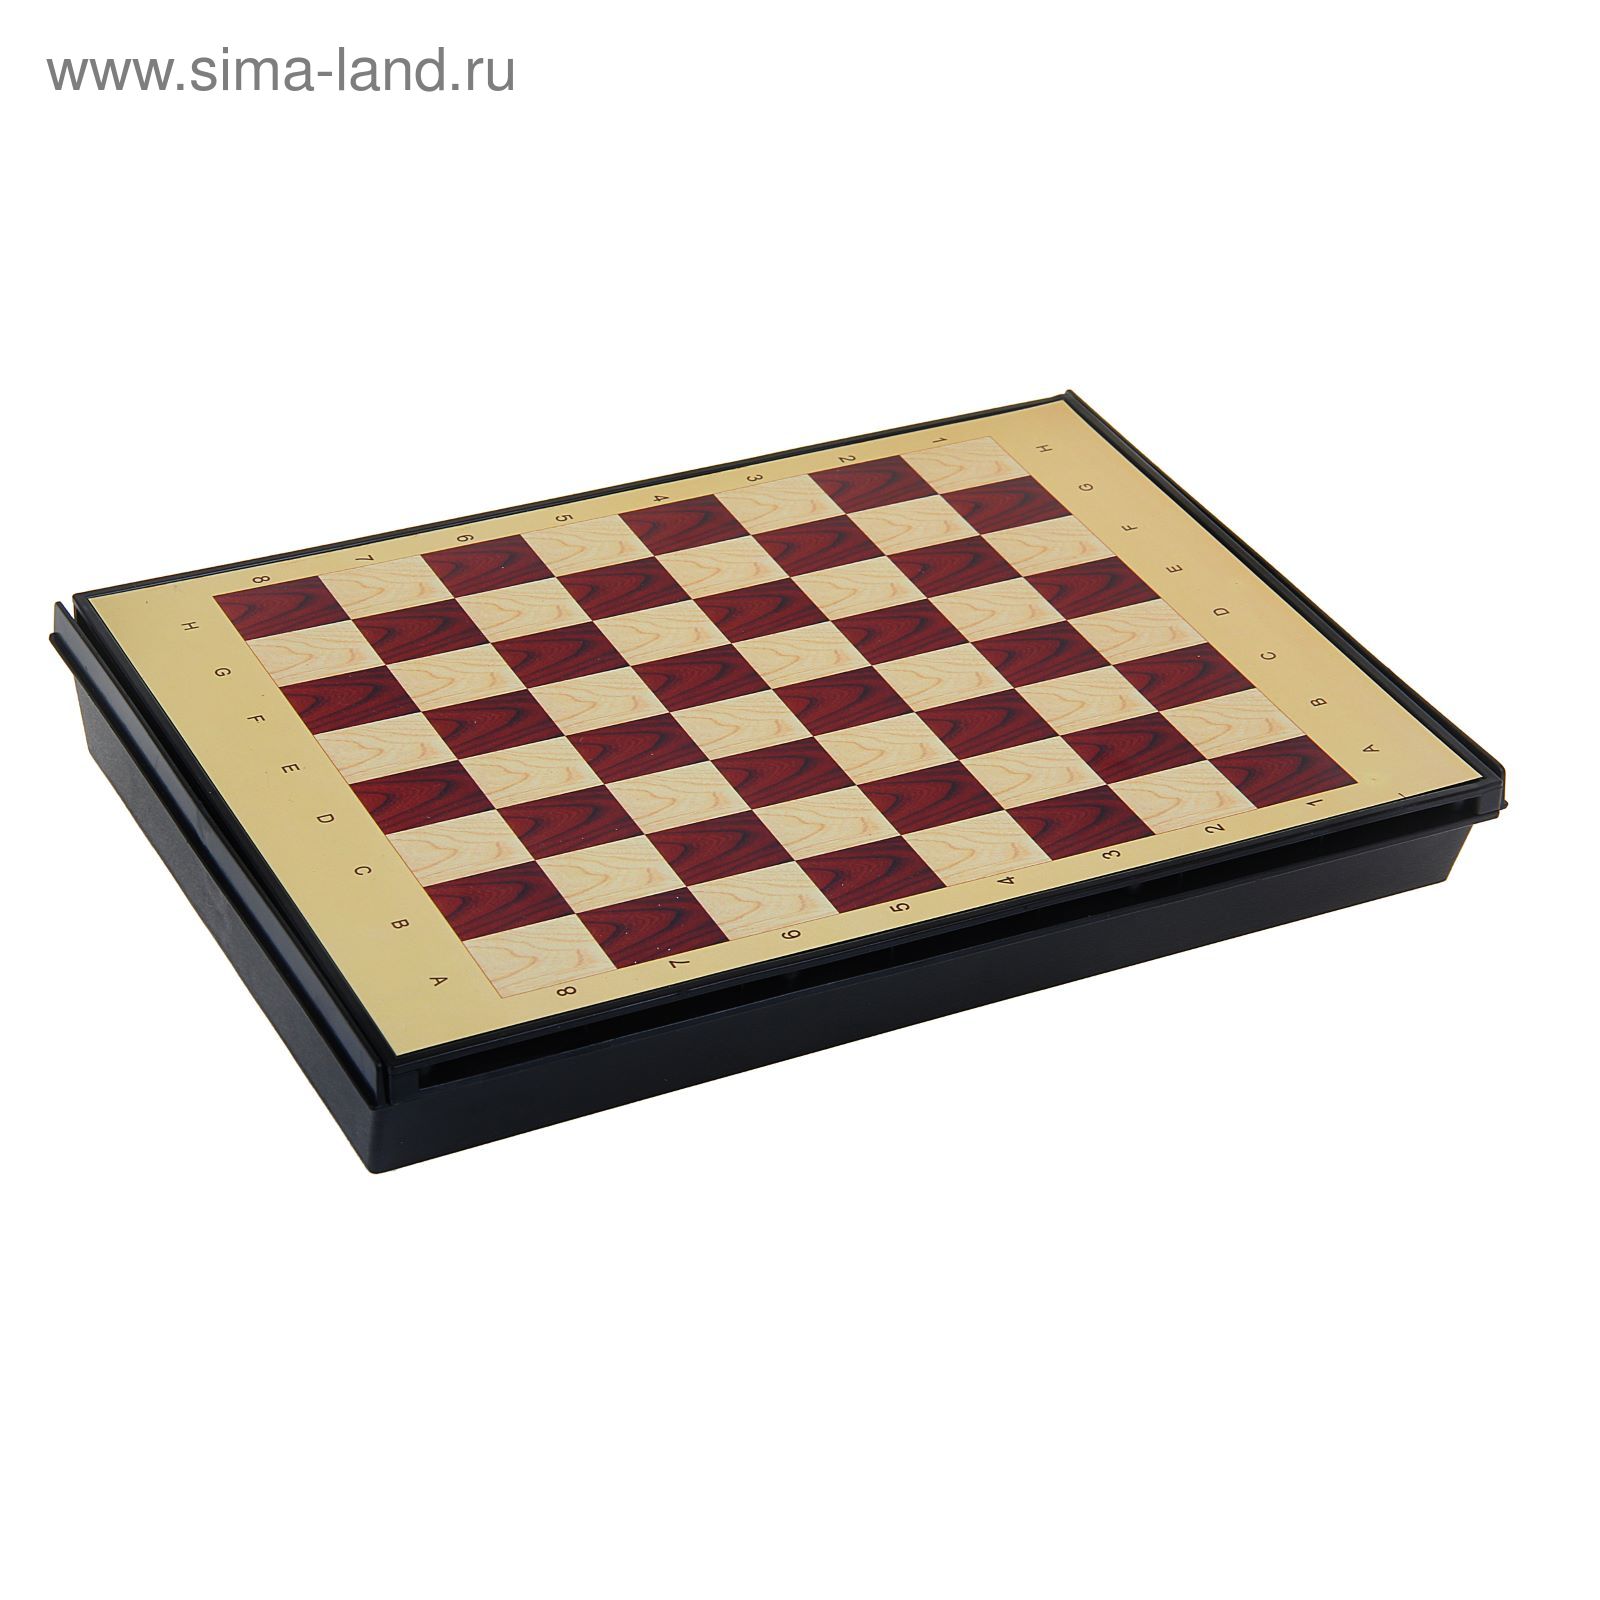 Игра настольная "Шахматы малые", с ящиком, магнитная, в коробке